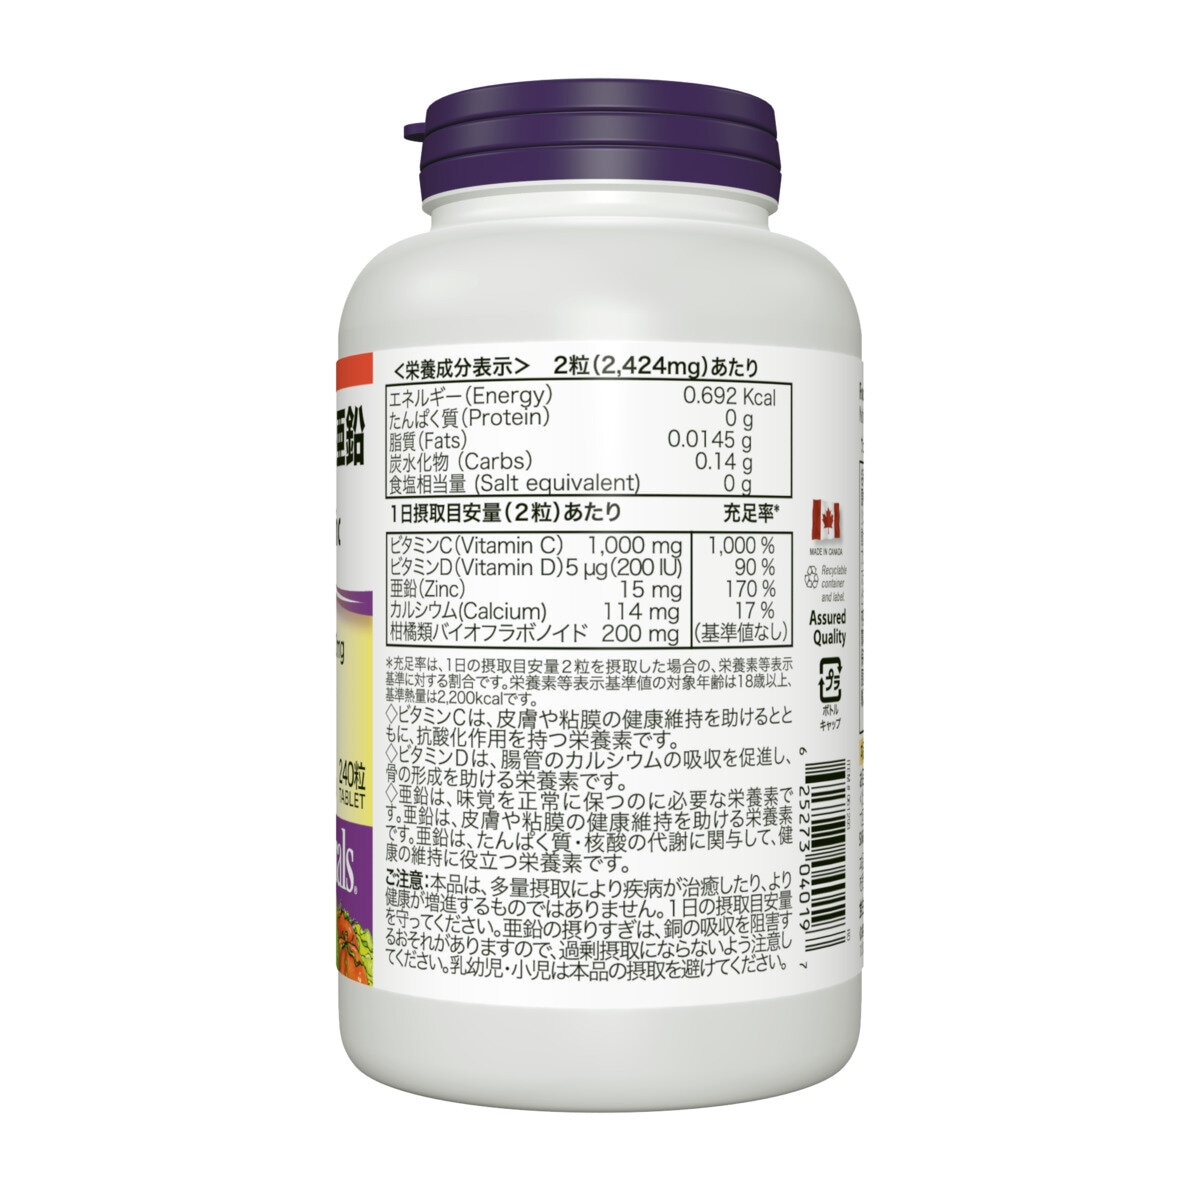 ウェバー・ナチュラルズ ビタミン C・D  亜鉛 240 粒 Costco Japan